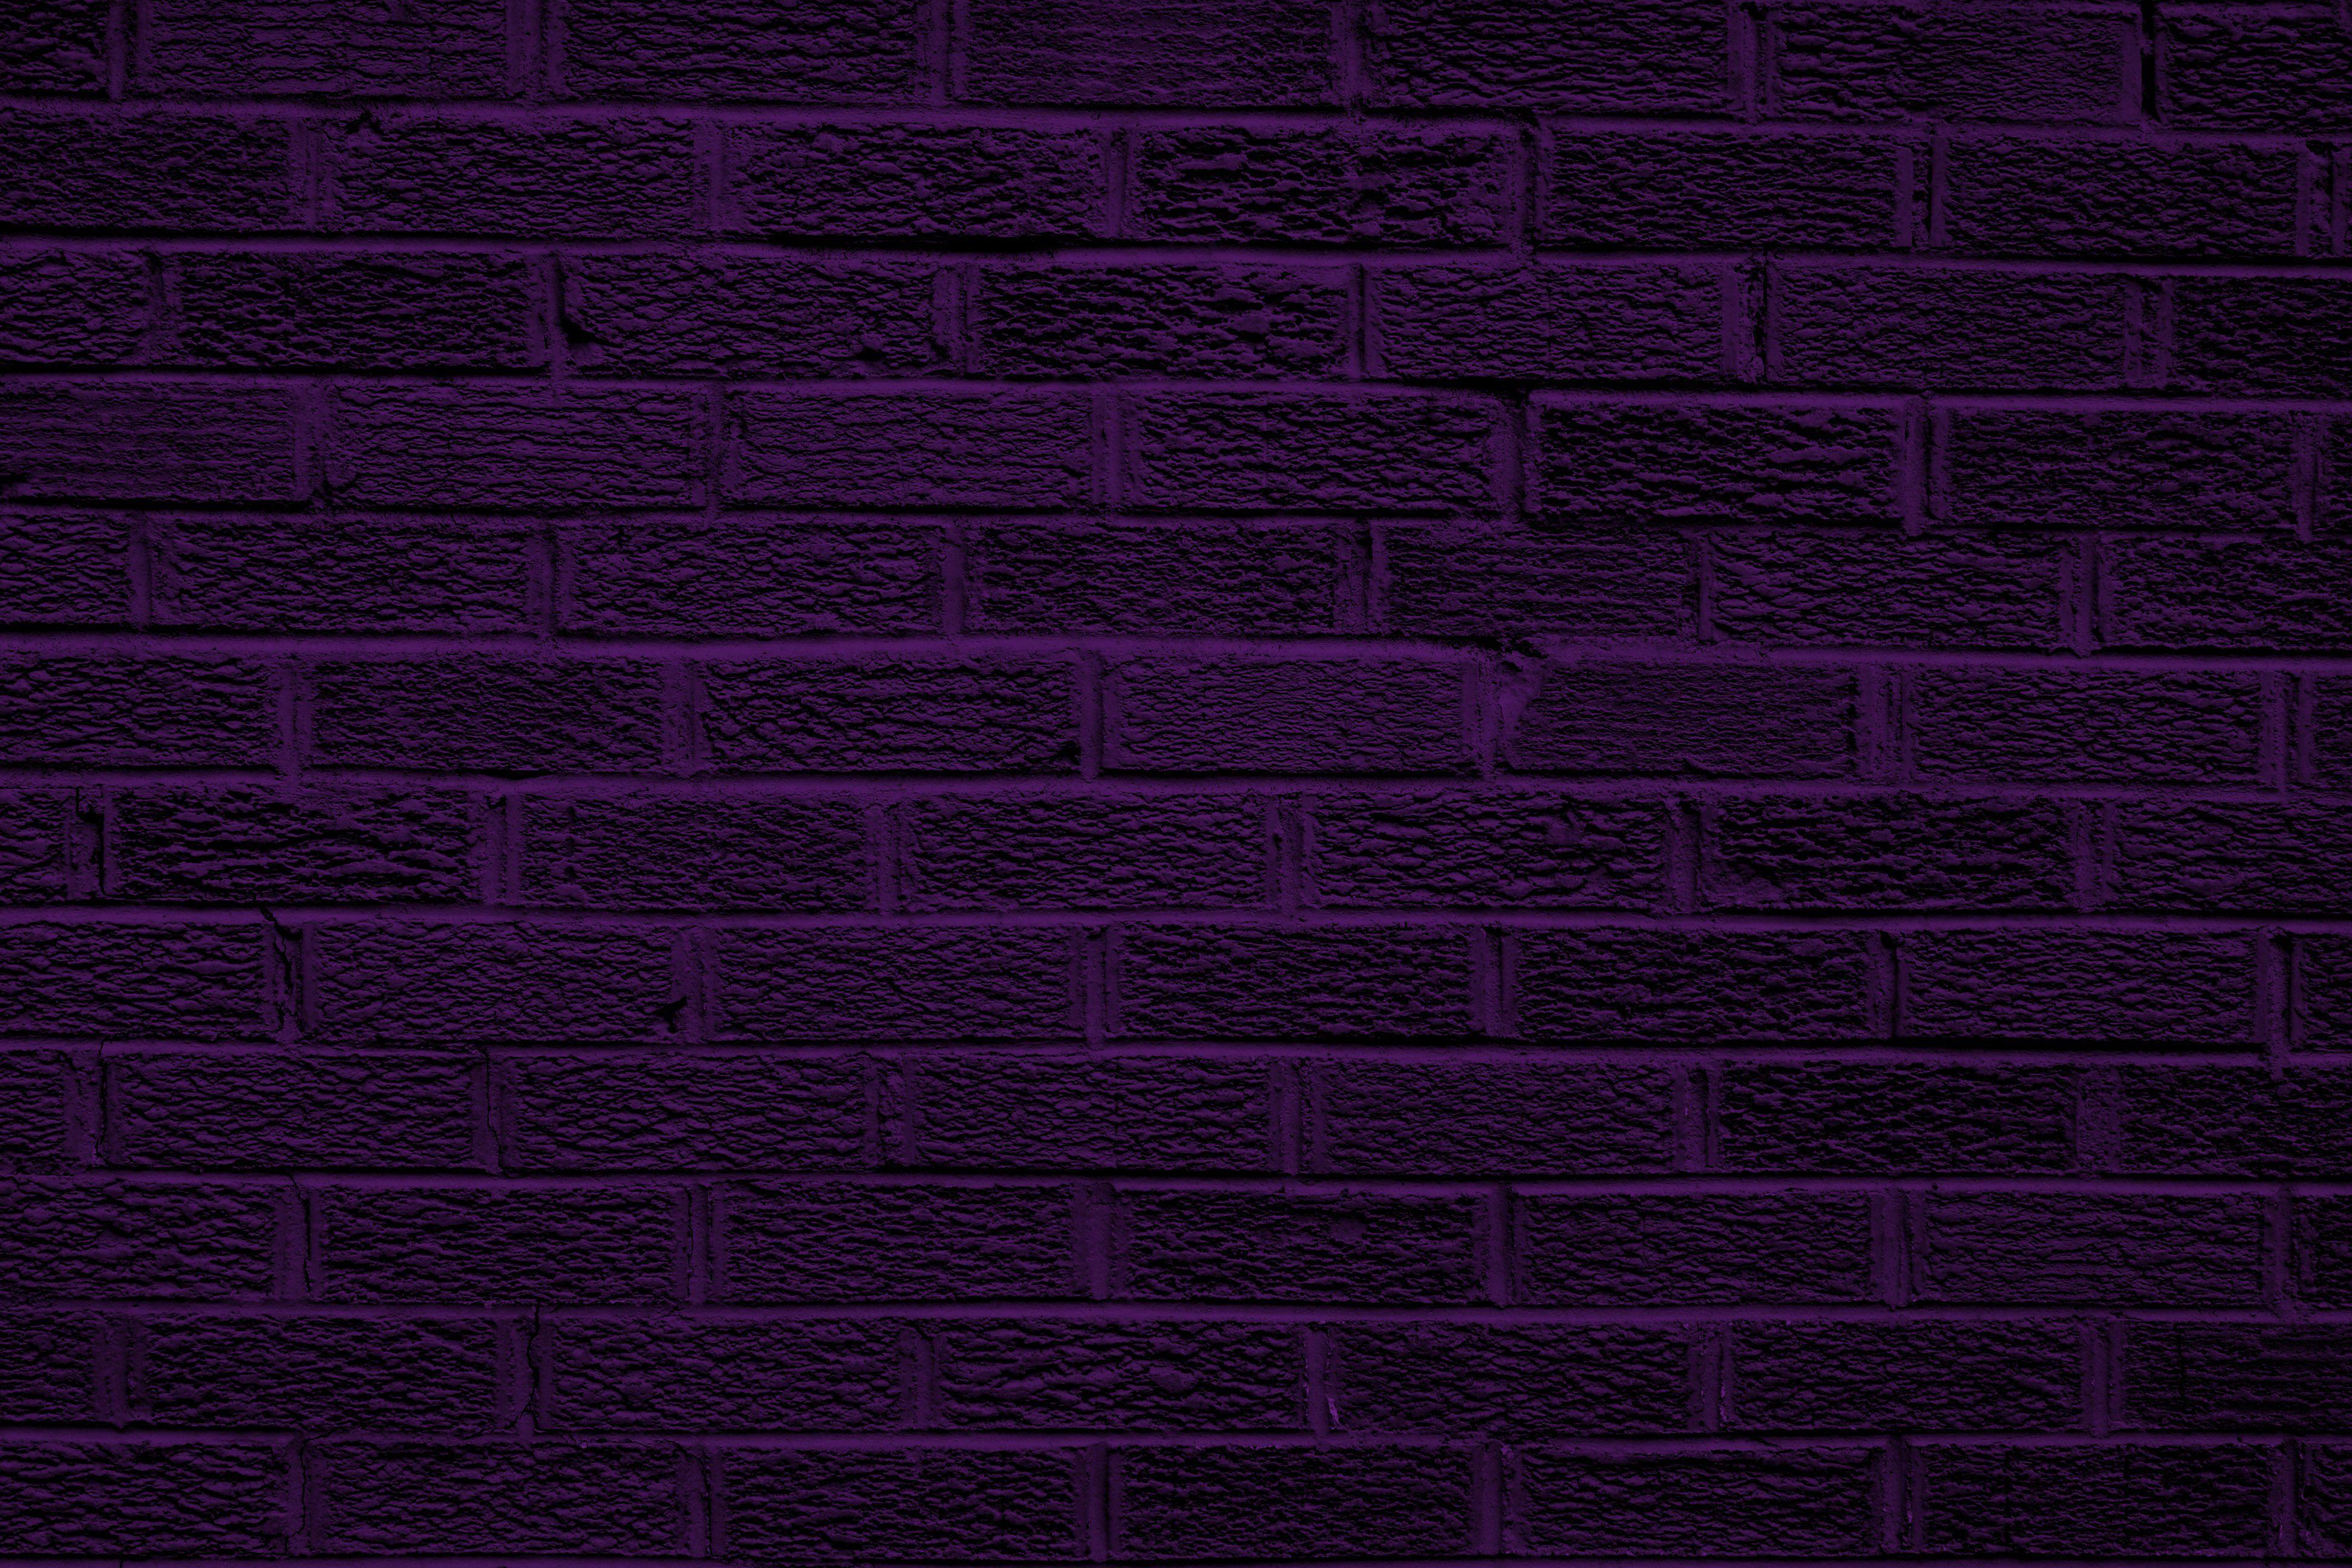 Được chọn từ những hình ảnh nền tường gạch màu tím đẹp nhất, chúng tôi mang đến cho bạn sự phù hợp với phong cách riêng của bạn. Với độ sắc nét và chất lượng hoàn hảo, hình nền tường gạch màu tím của chúng tôi sẽ làm cho ngôi nhà của bạn trở nên hoàn hảo hơn.